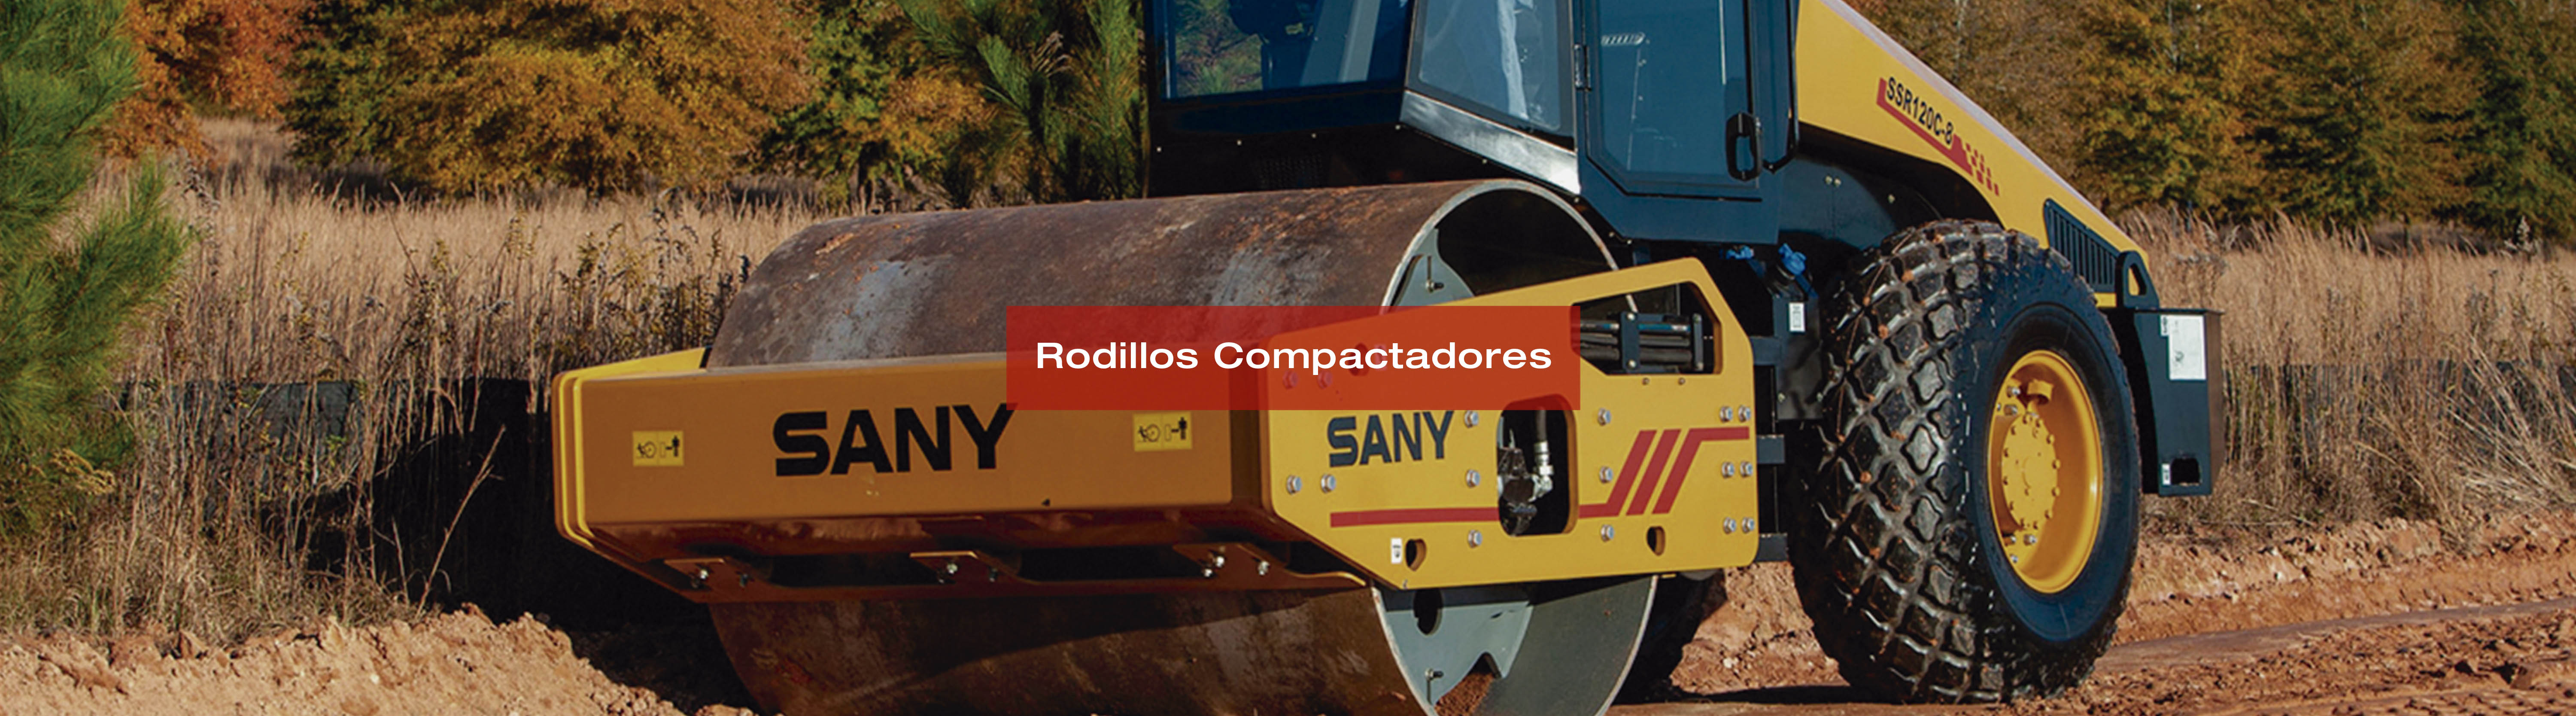 Banner de Rodillos Compactadores